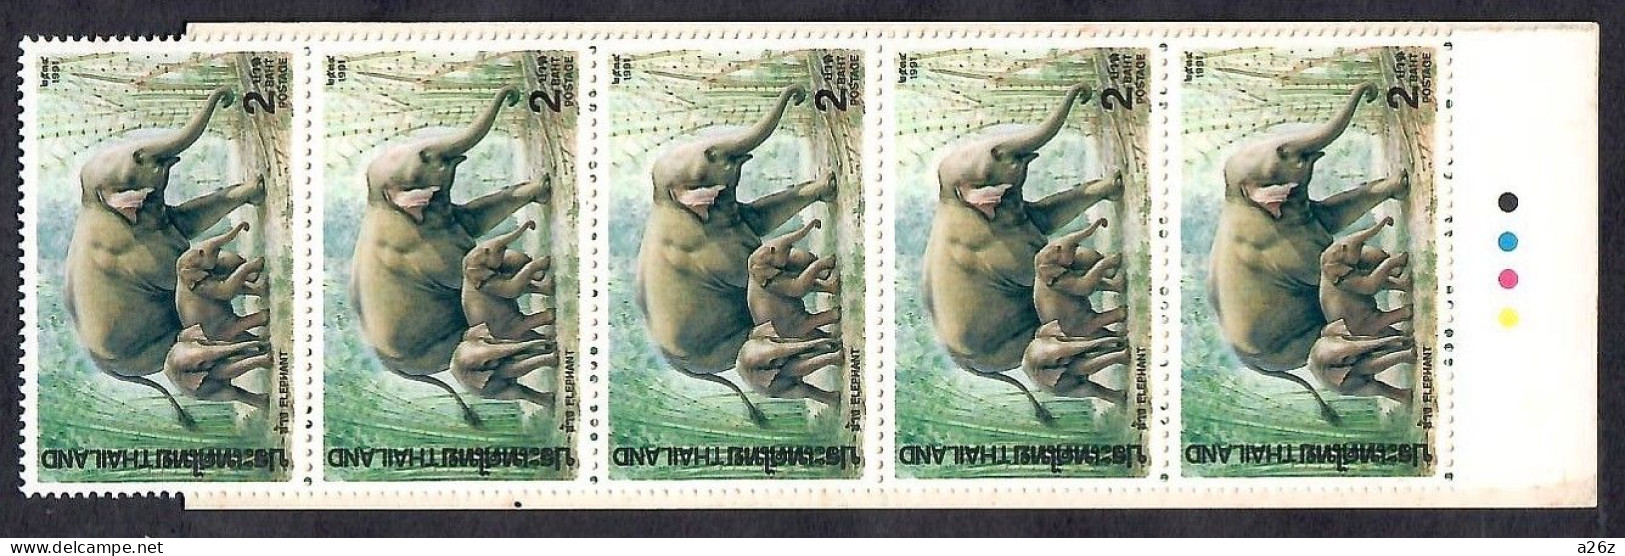 Thailand 1991 Asia Elephants Booklet MNH - Thaïlande